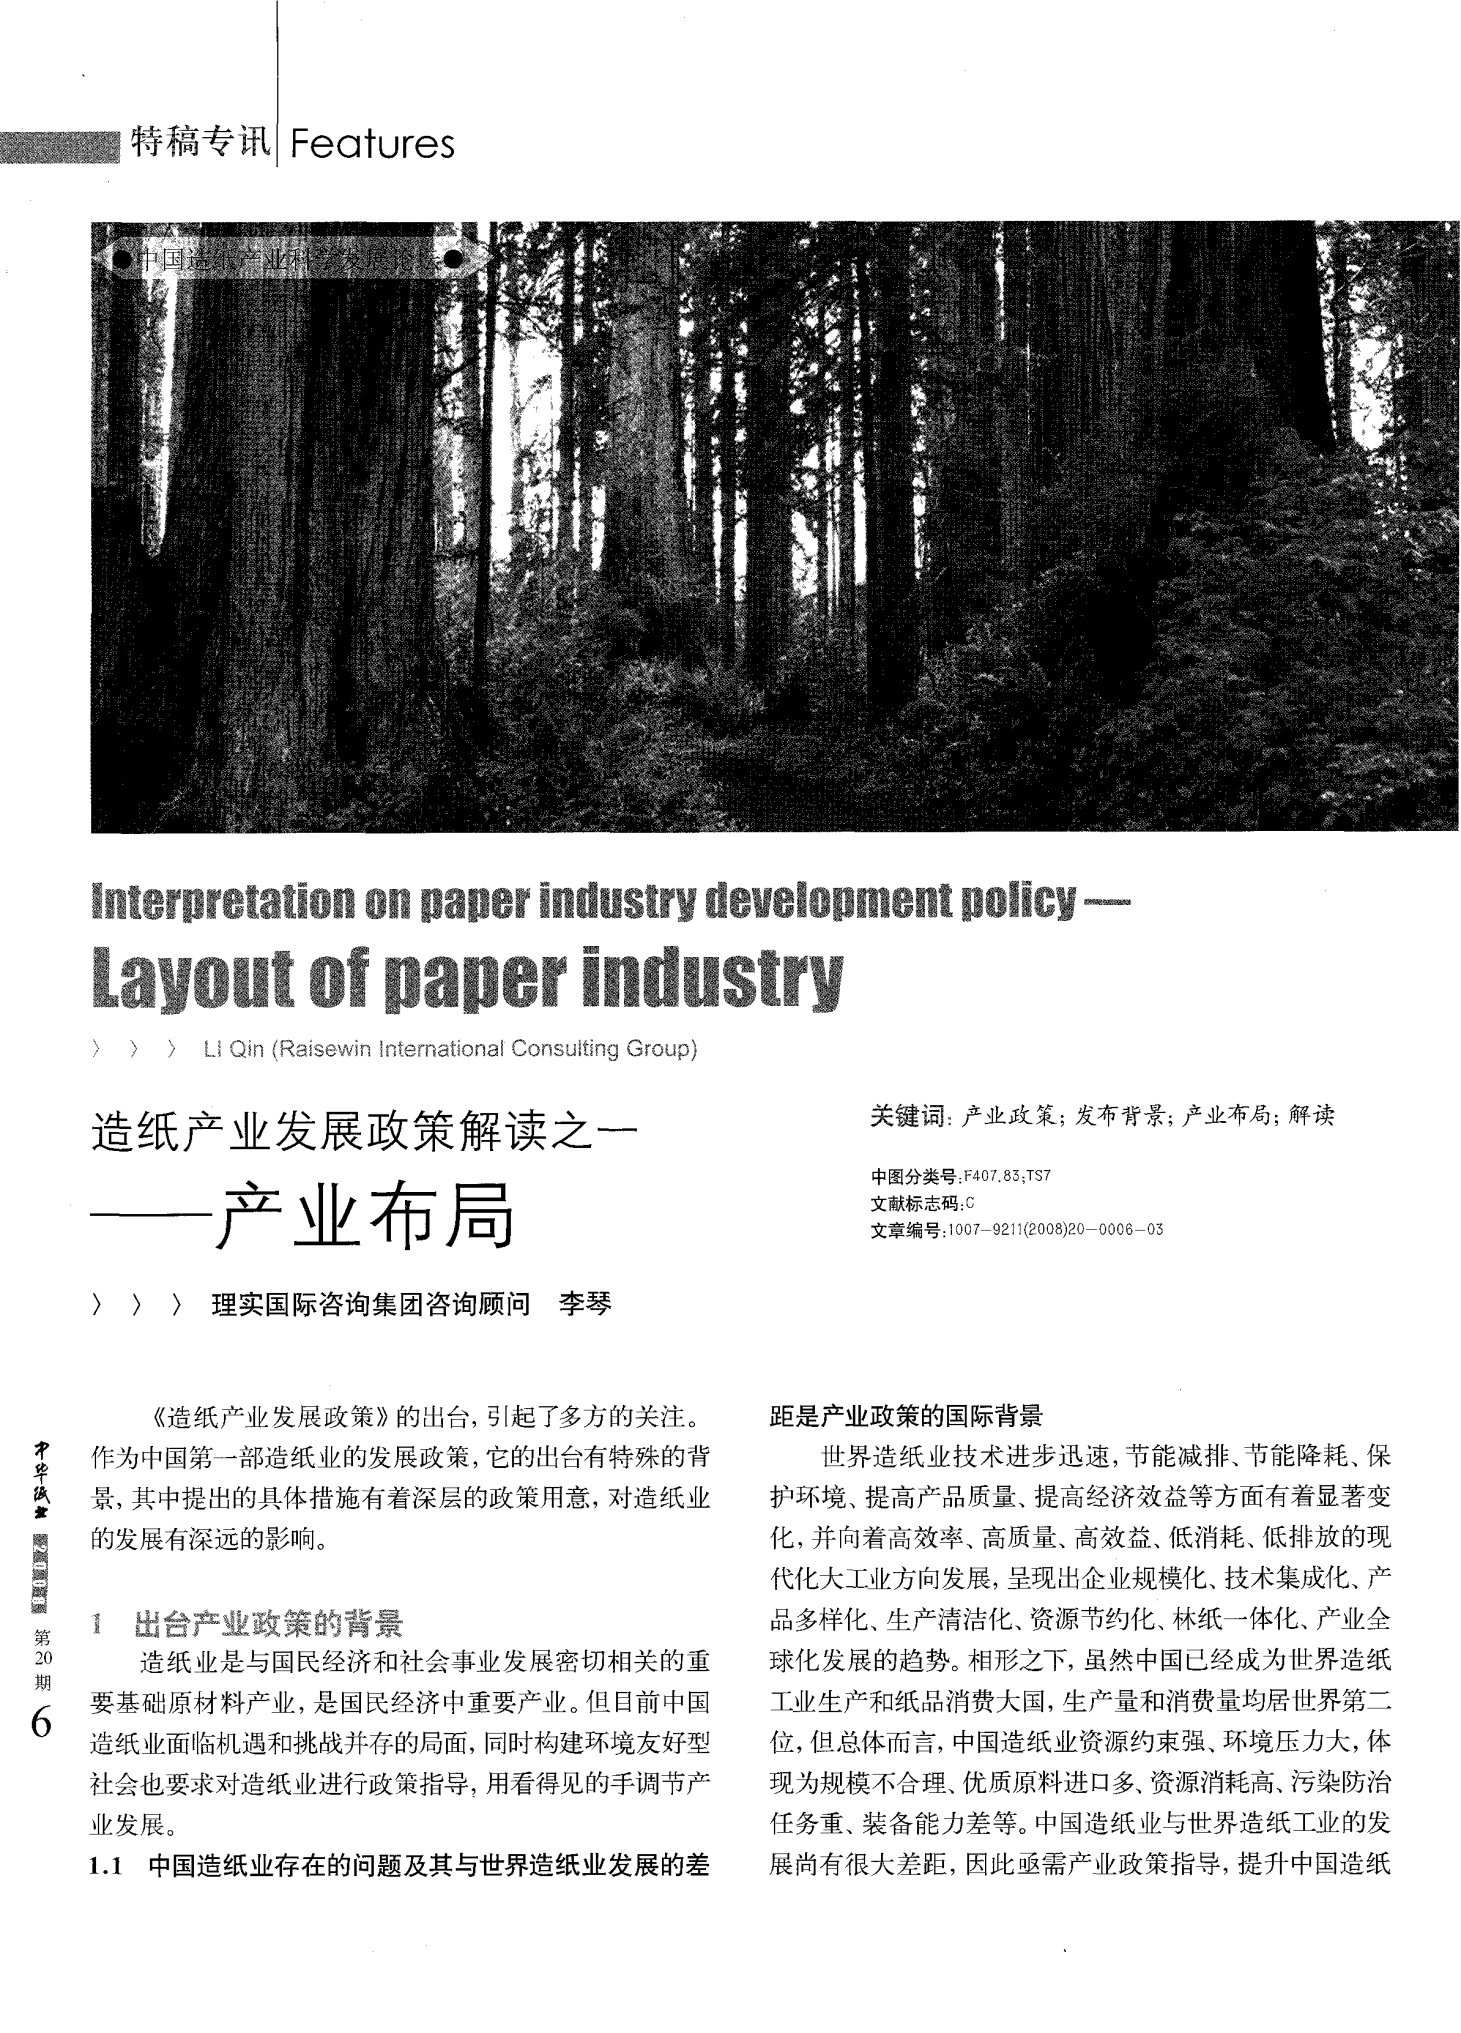 造纸产业发展政策解读之一--产业布局